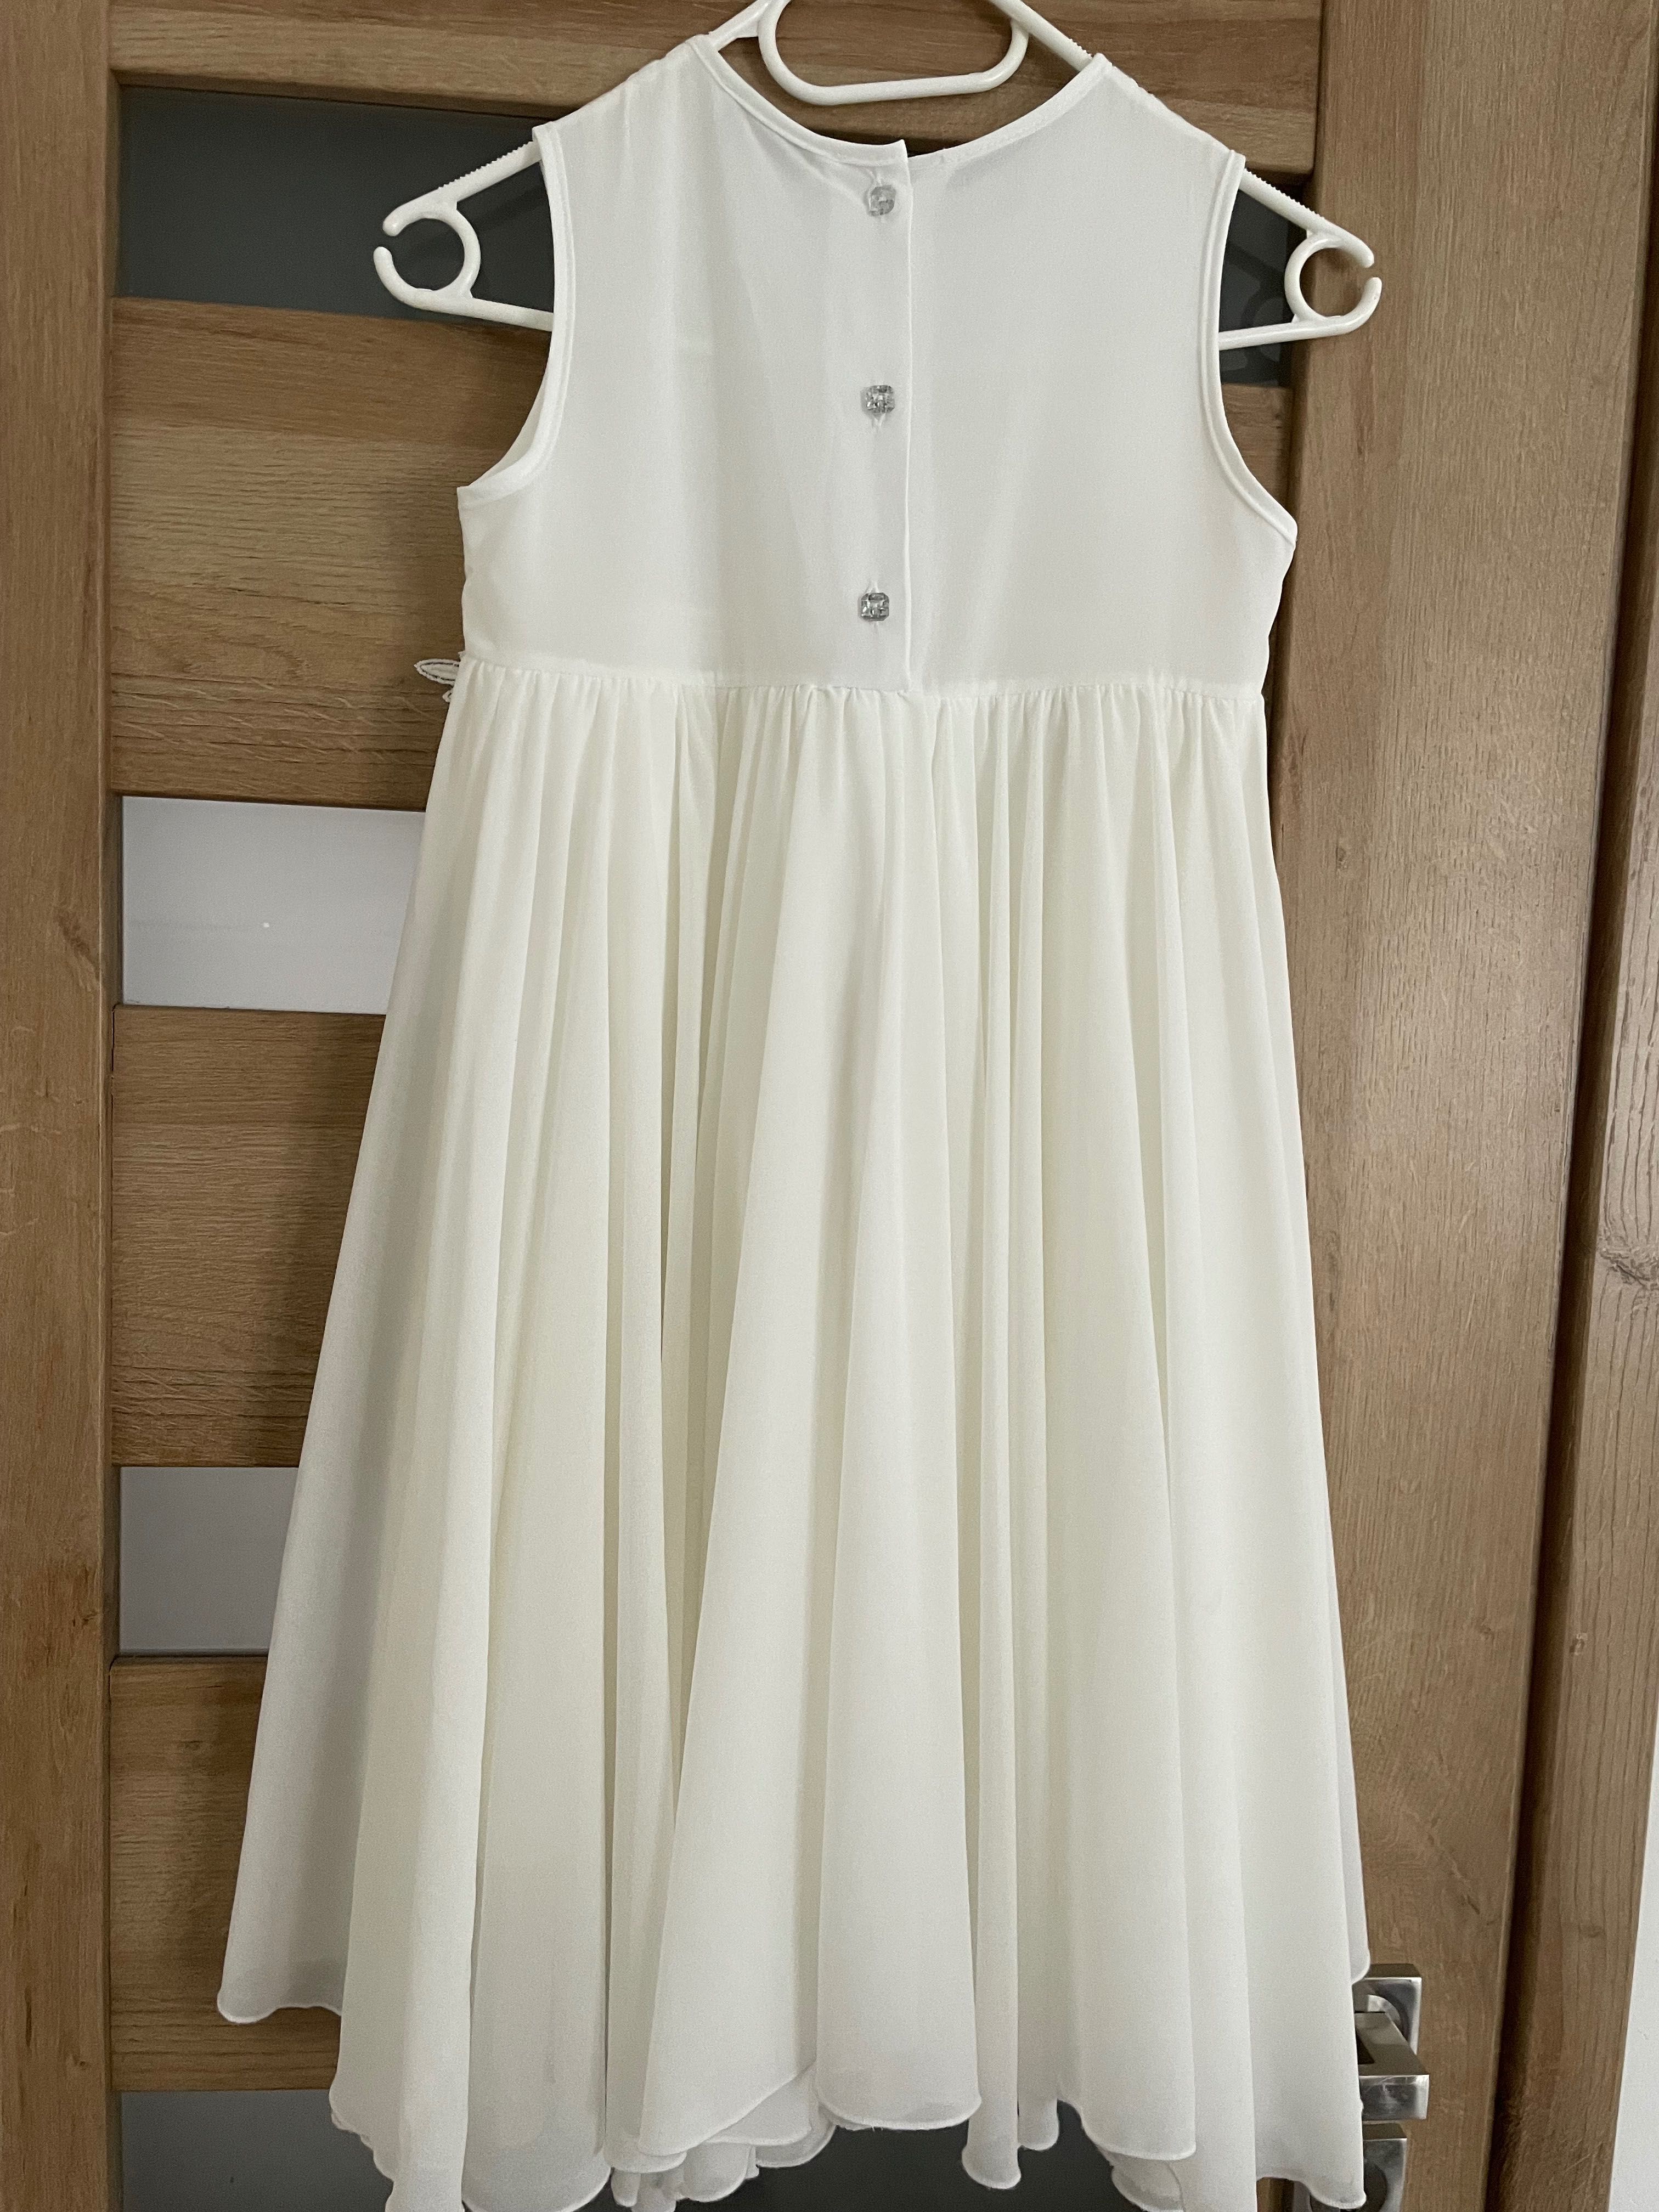 Elegancka sukienka biała komunijna na wesele 134 140 Mała Mi wyszczupl